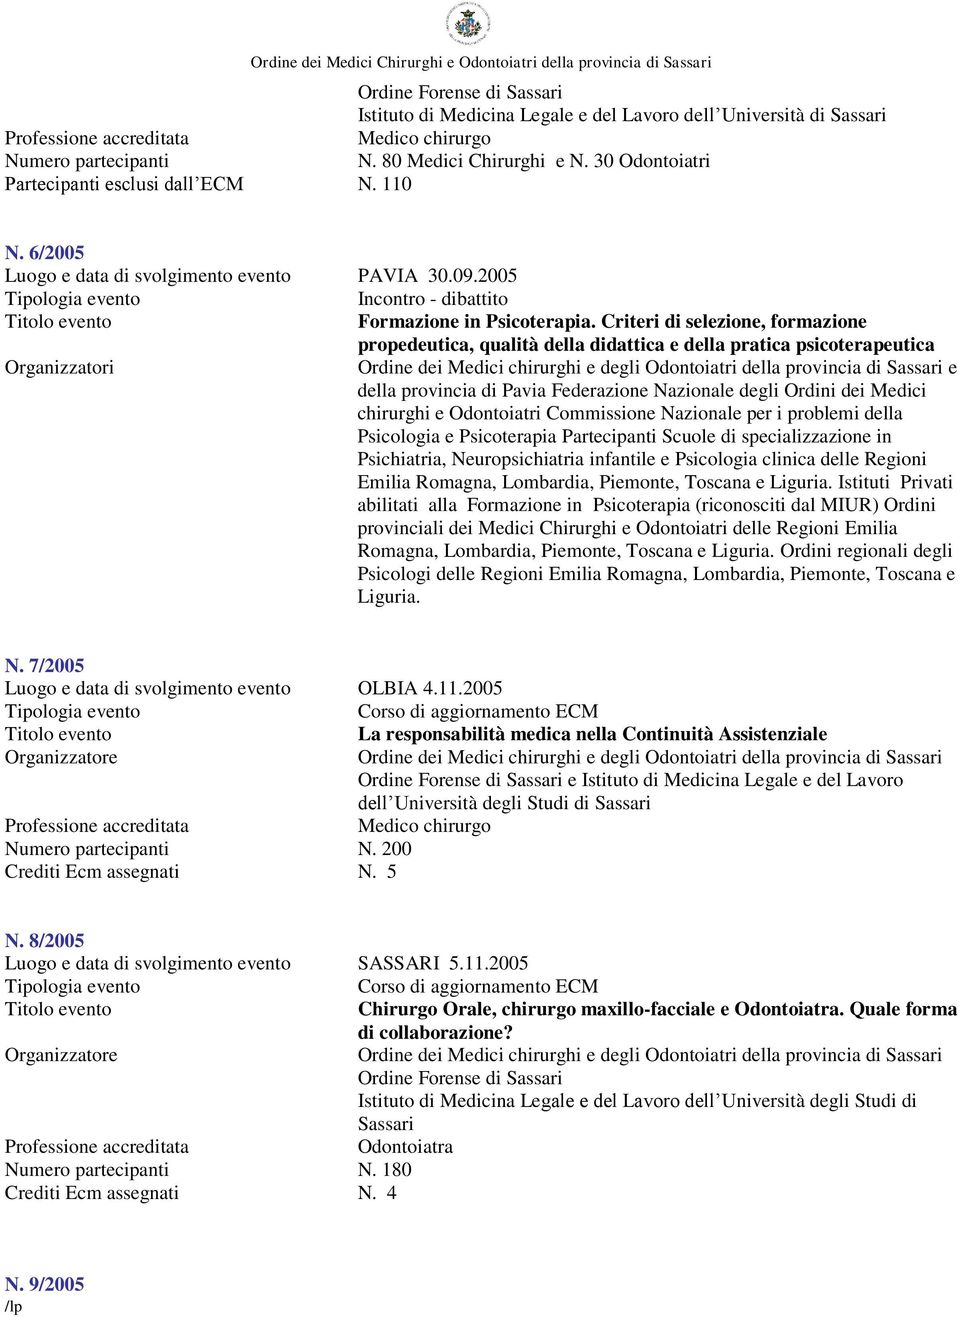 Criteri di selezione, formazione propedeutica, qualità della didattica e della pratica psicoterapeutica Organizzatori e della provincia di Pavia Federazione Nazionale degli Ordini dei Medici